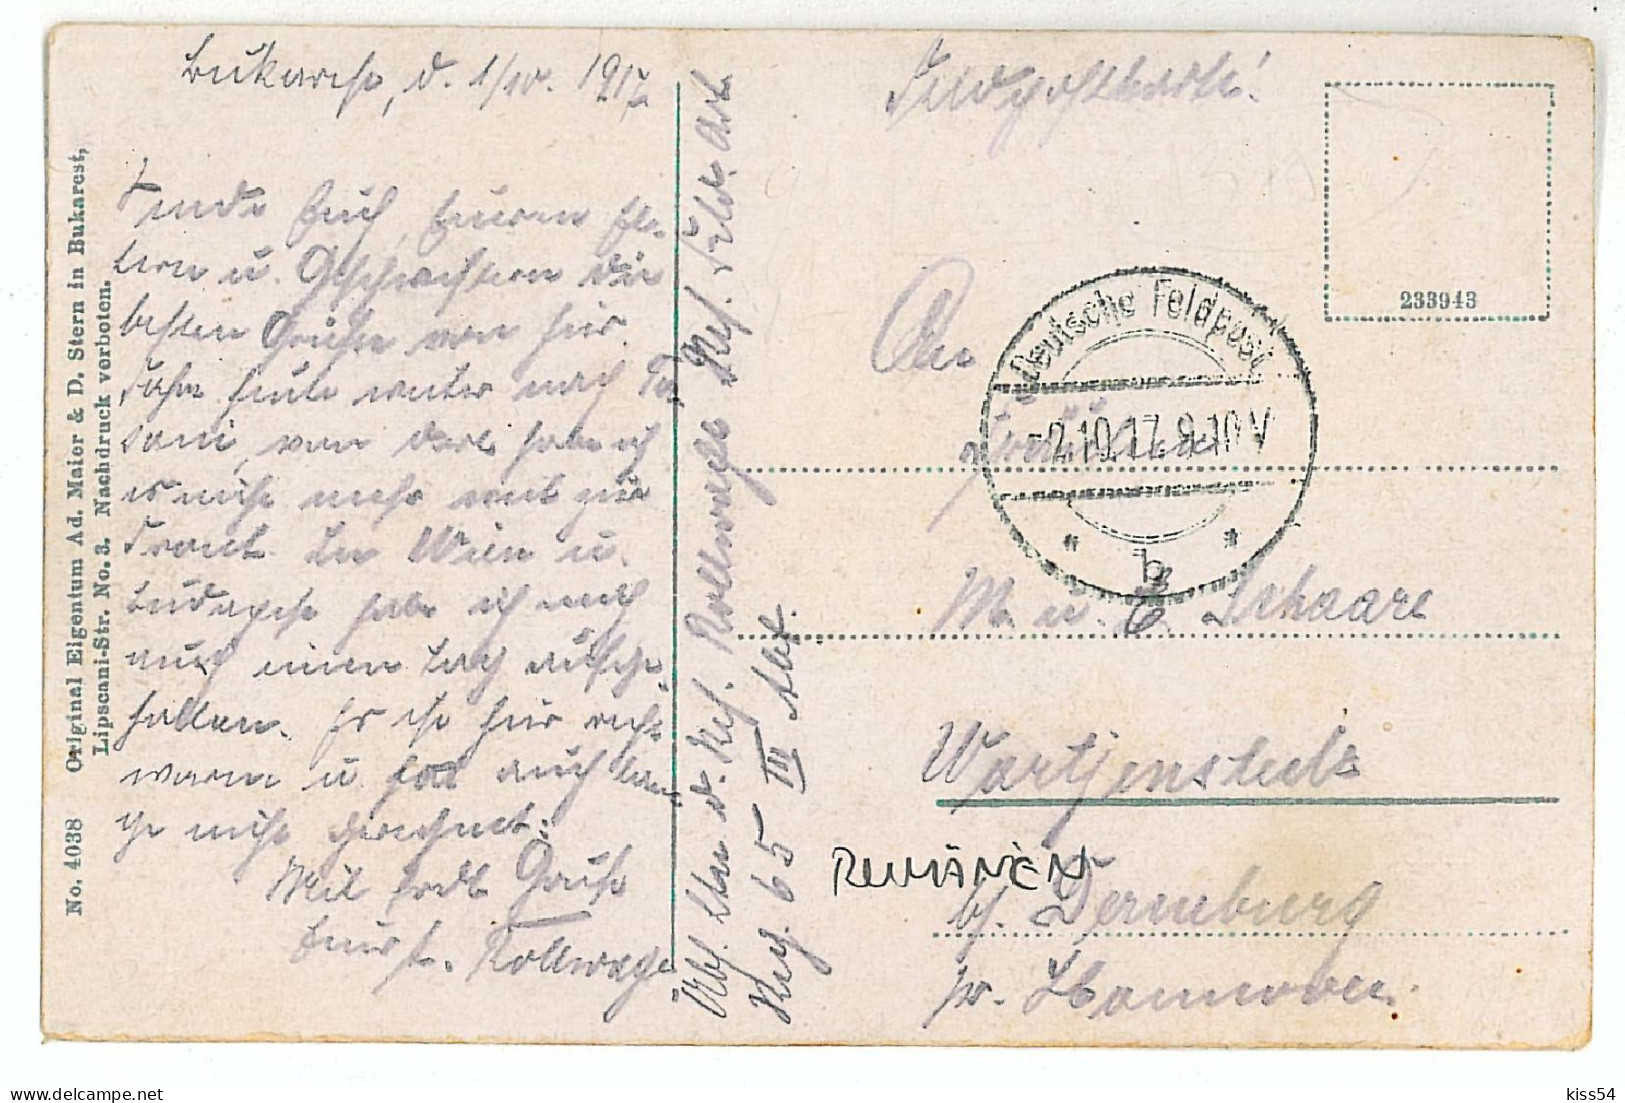 RO 40 - 1375 BUCURESTI, Bratianu Statue, Romania - Old Postcard - Used - 1917 - Roemenië